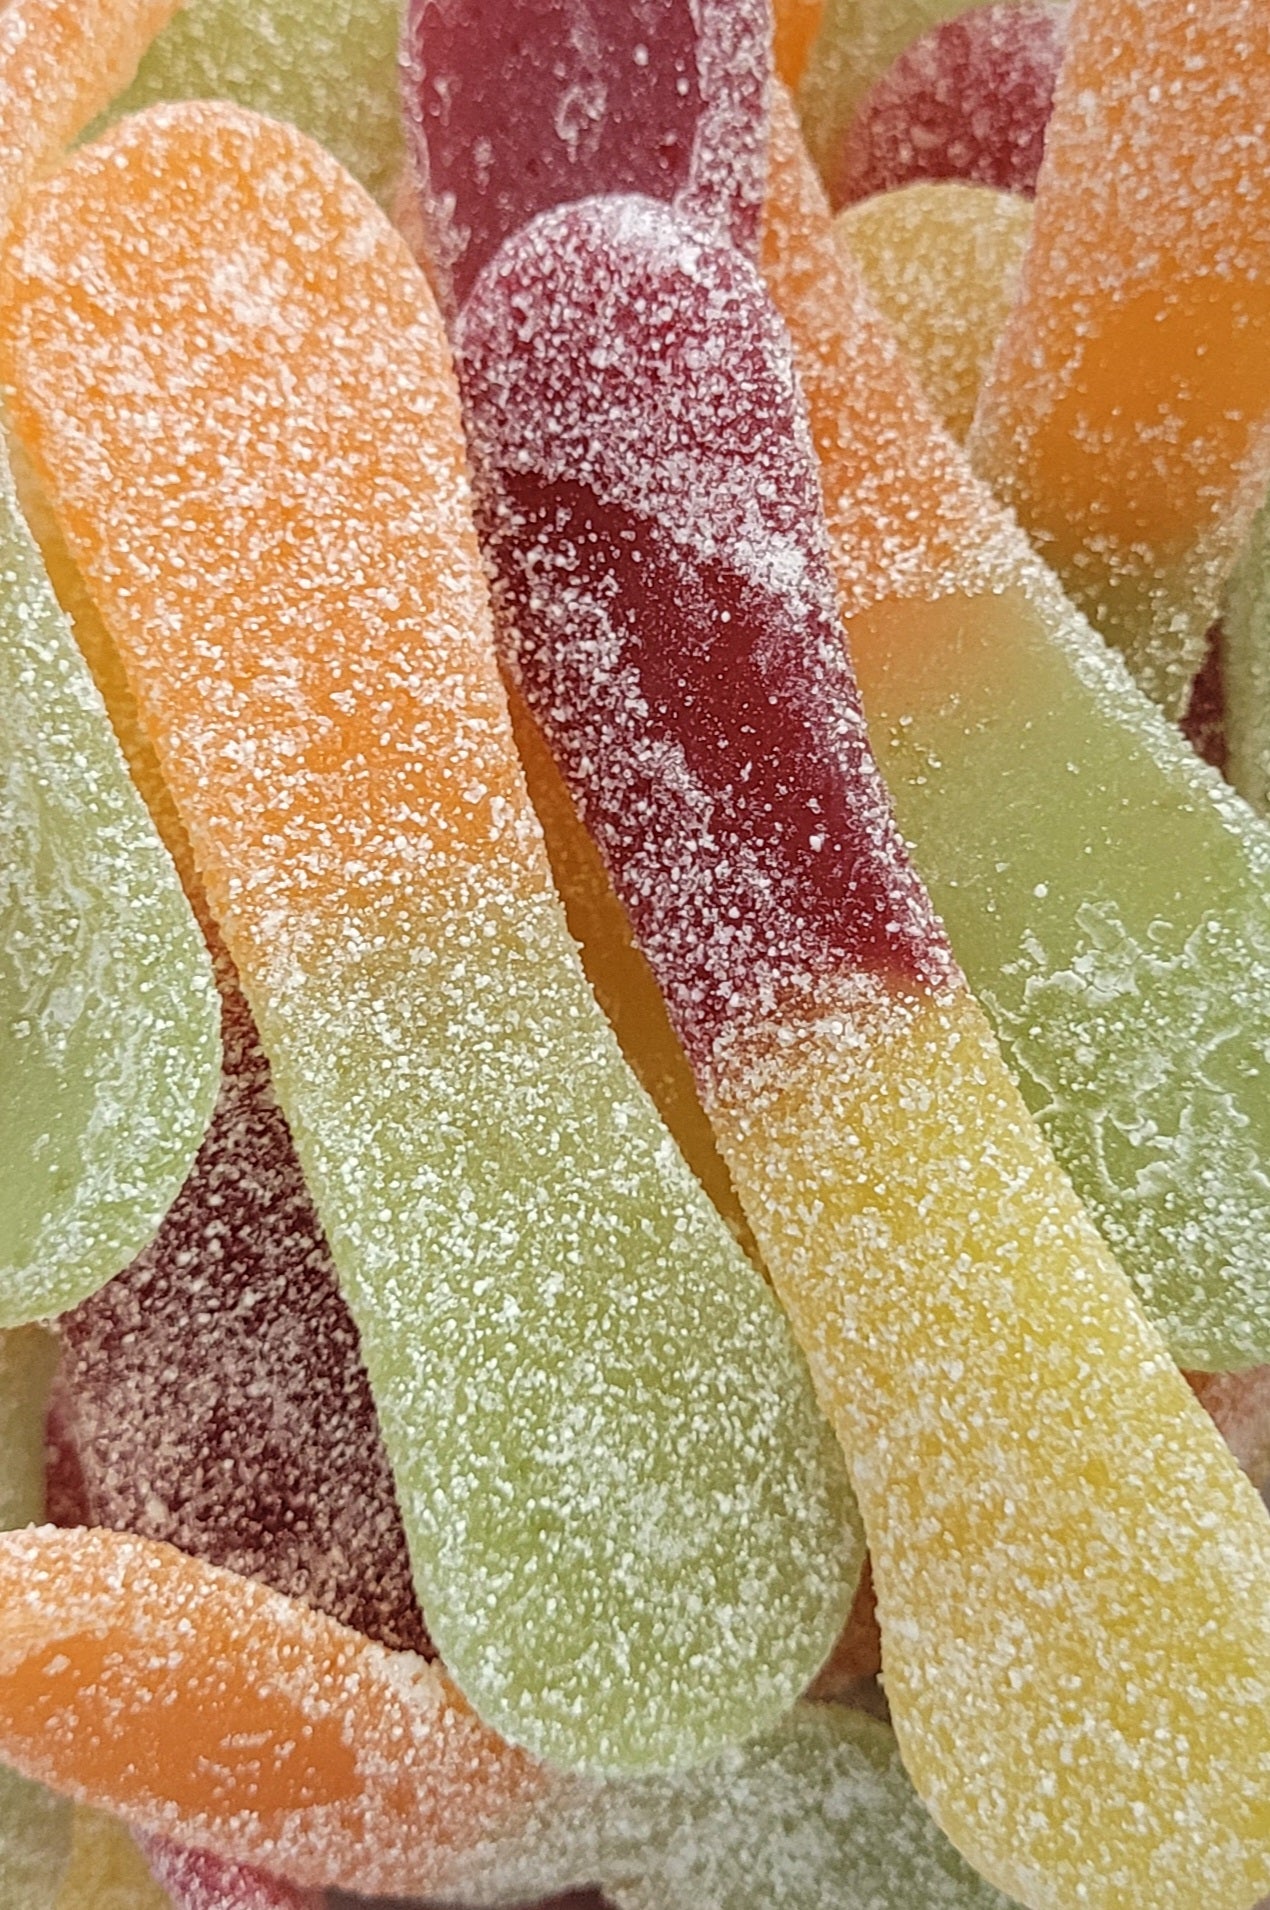 Surffizz Lutti XL - Bonbons en forme de langue de chat aux fruits